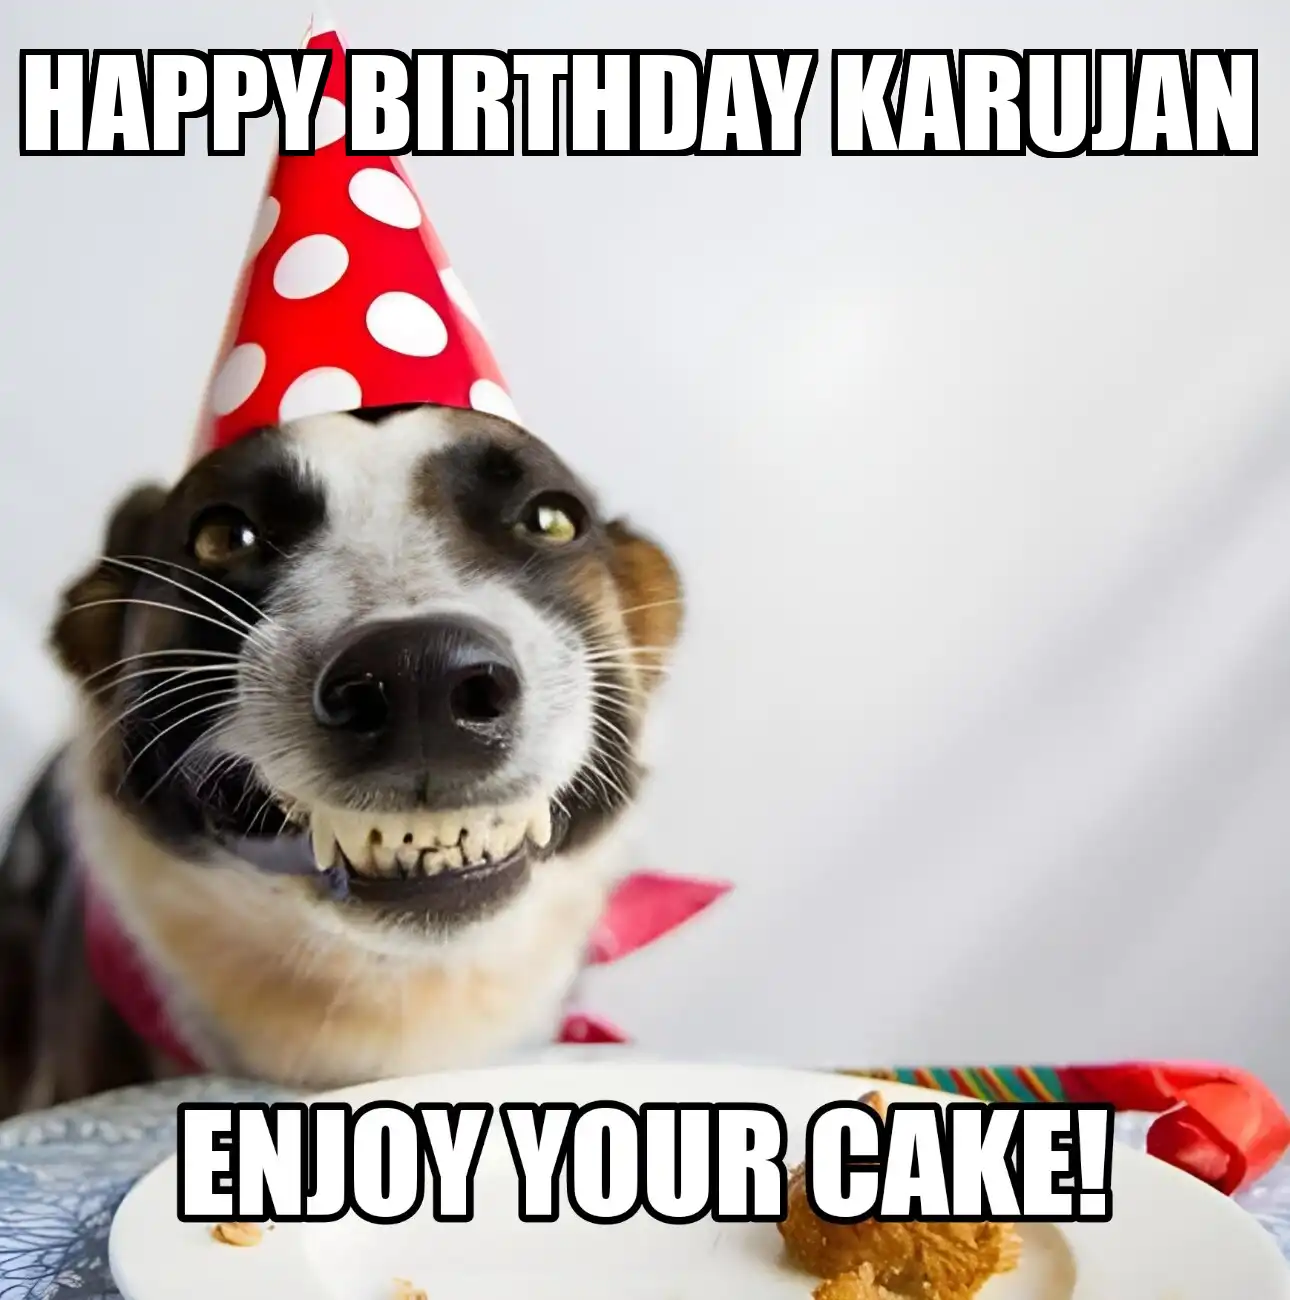 Happy Birthday Karujan Enjoy Your Cake Dog Meme